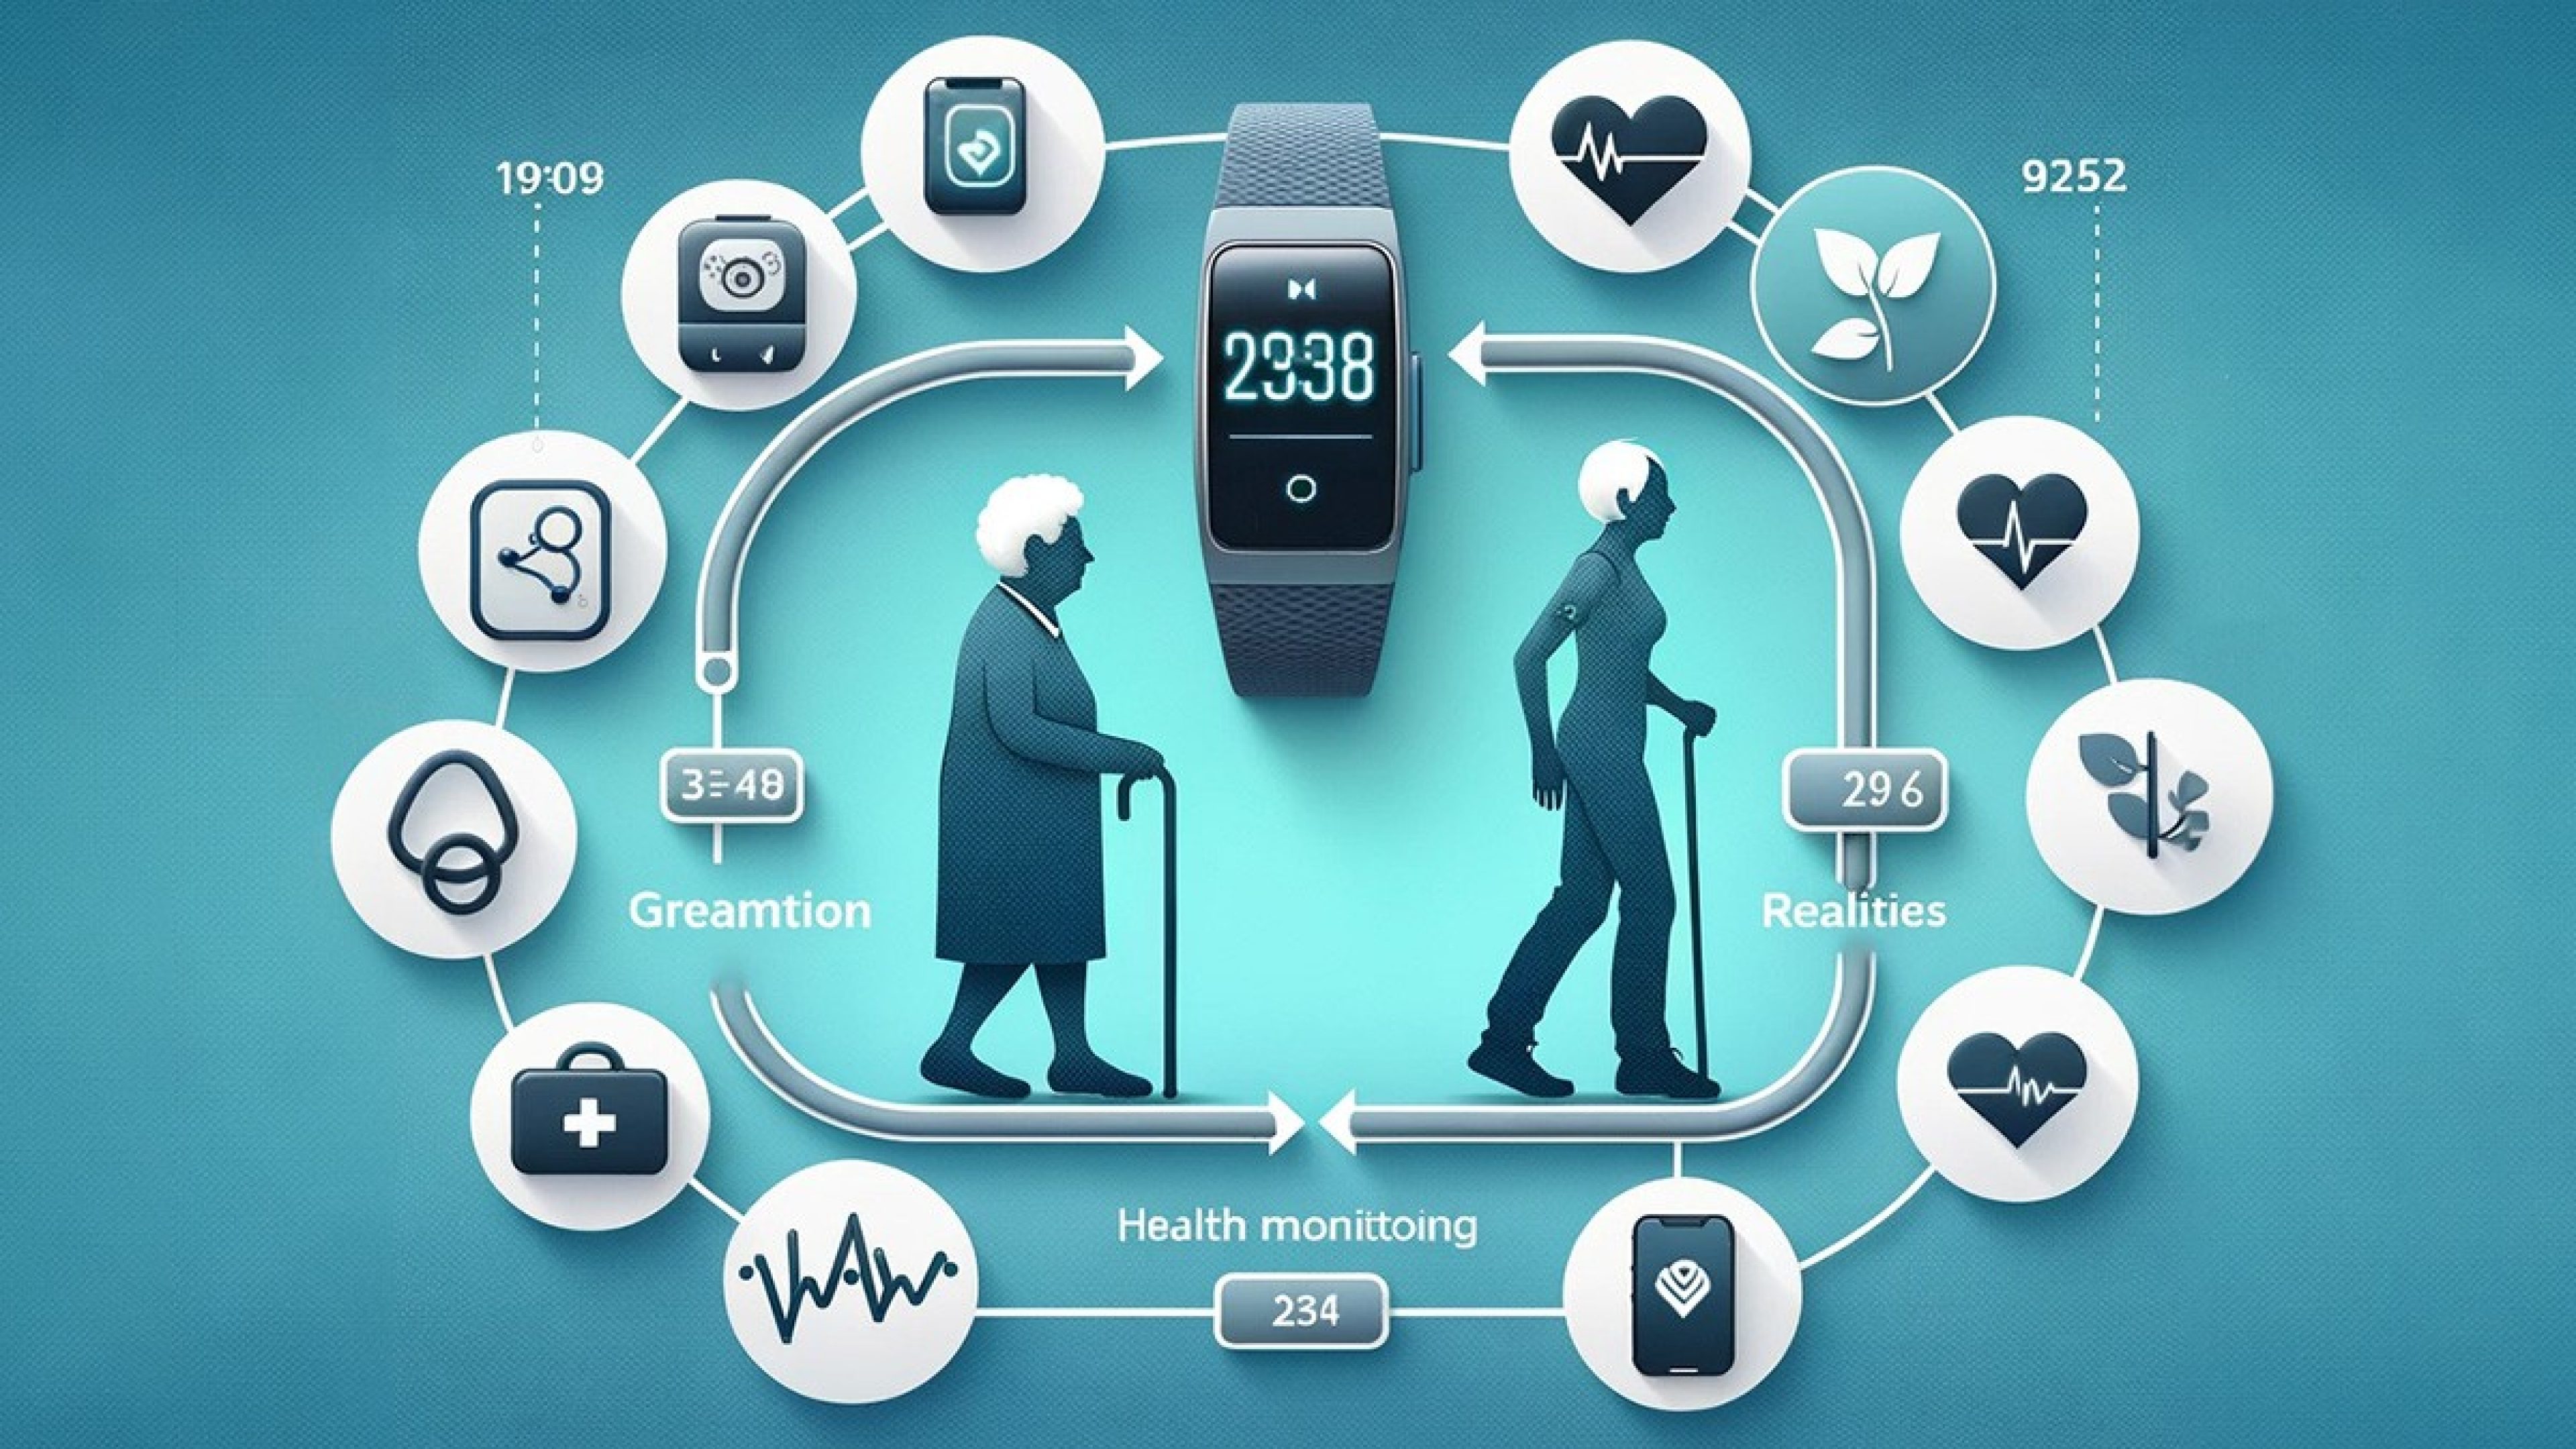 Illustration mit einer alten und einer jungen Frau in der Mitte, darüber eine Uhr und verschiedene Gesundheitsparameter als Icons außen darum angeordnet